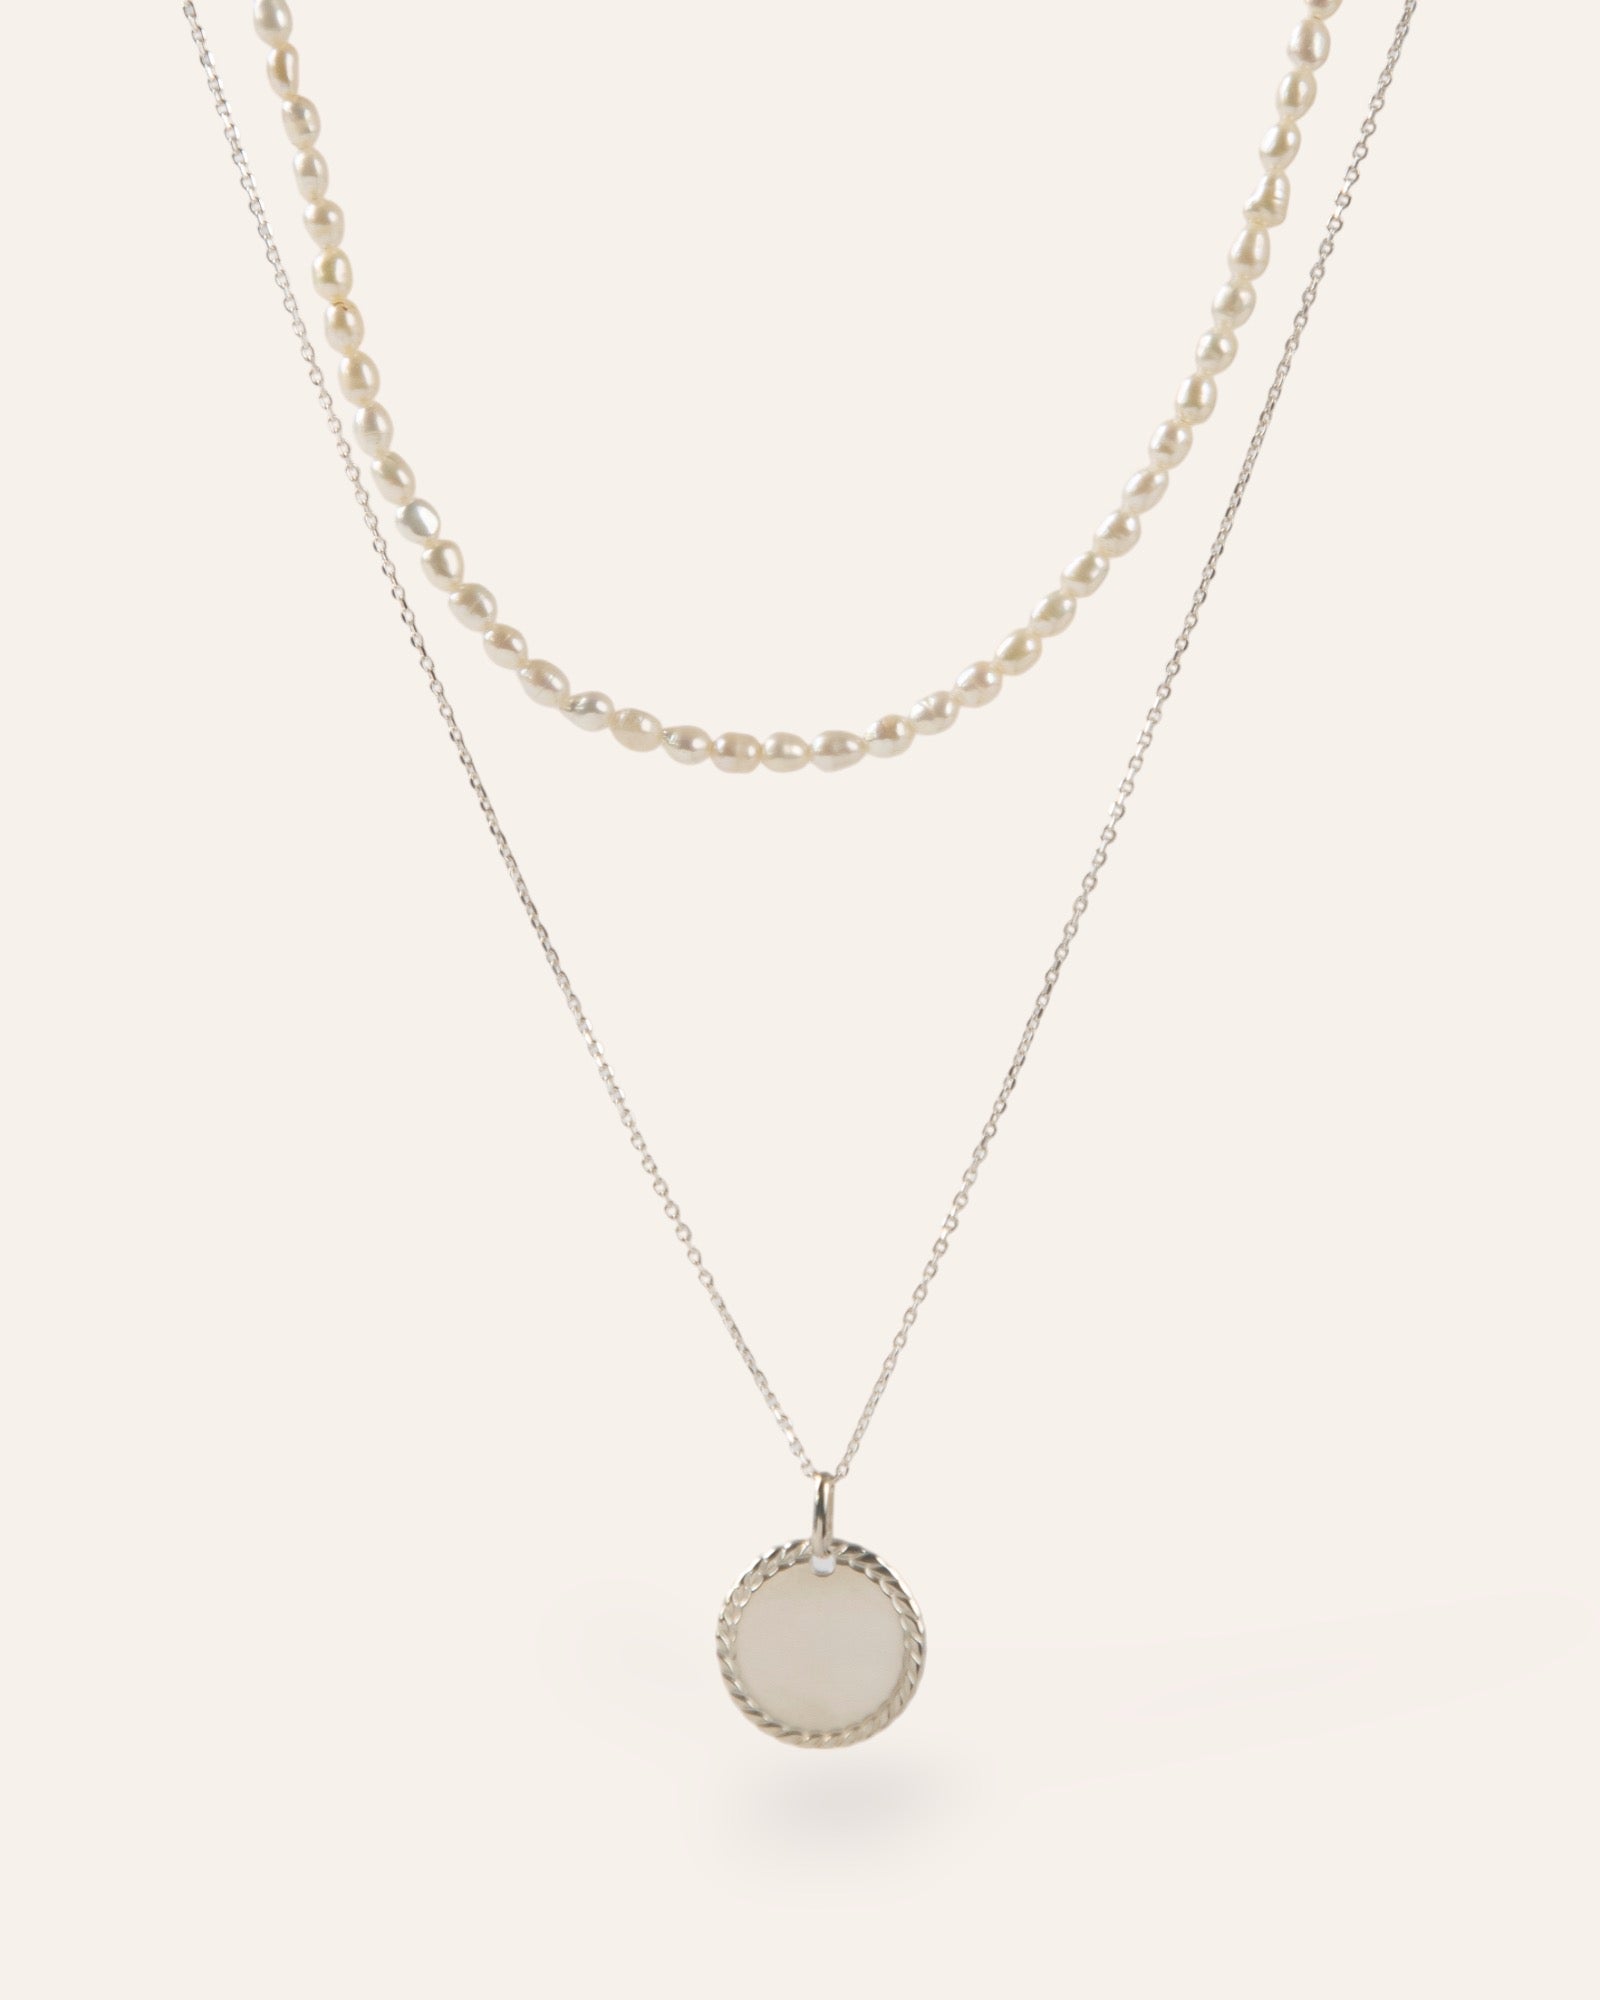 Composition de deux colliers, avec un collier orné de perles de culture, et un collier en chaîne forçat avec une médaille torsadée en argent massif 925 made in France.